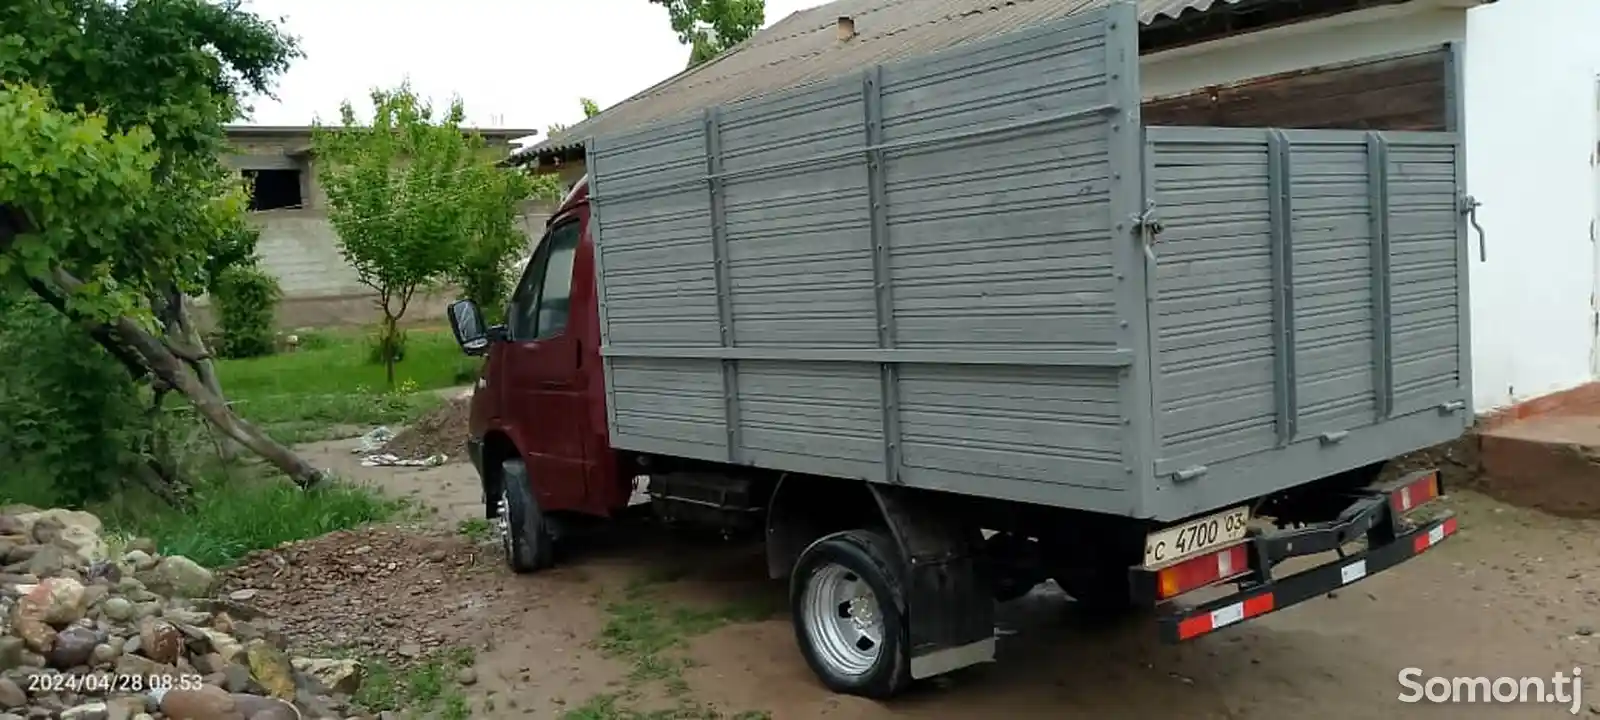 Бортовой грузовик Газель, 1997-1